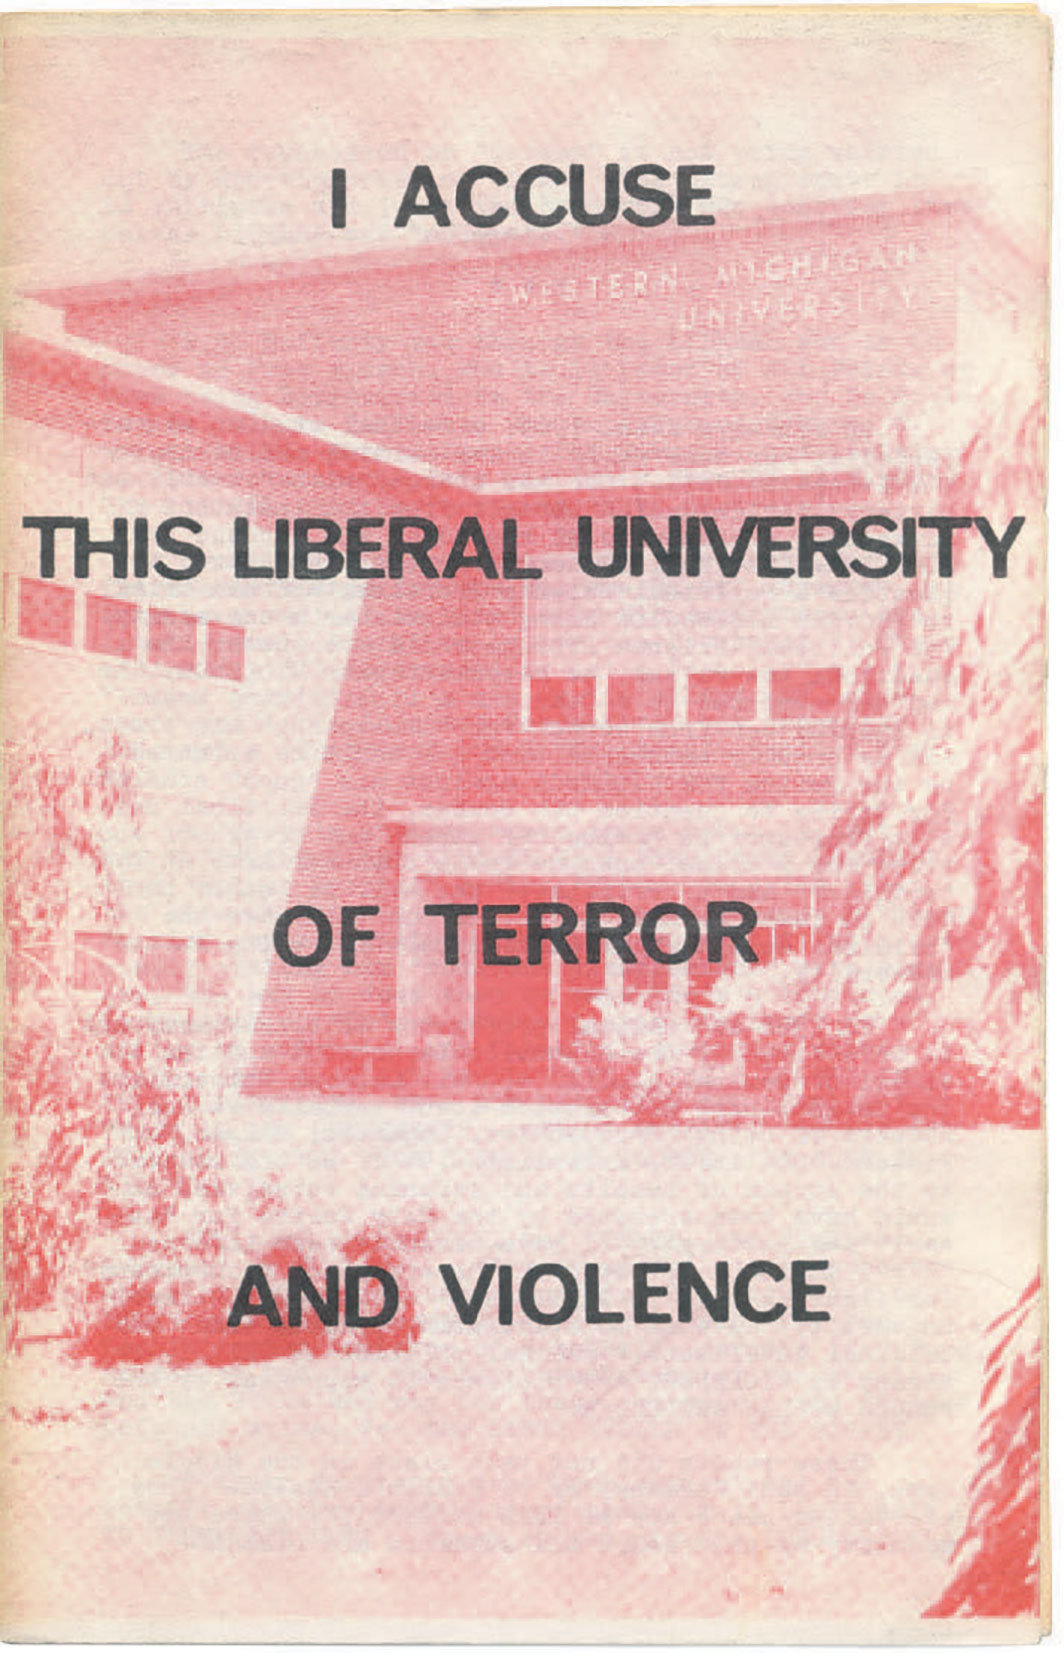 帕尔曼的《我控诉这个恐怖和暴力的人文大学》封面（黑与红，1969）.